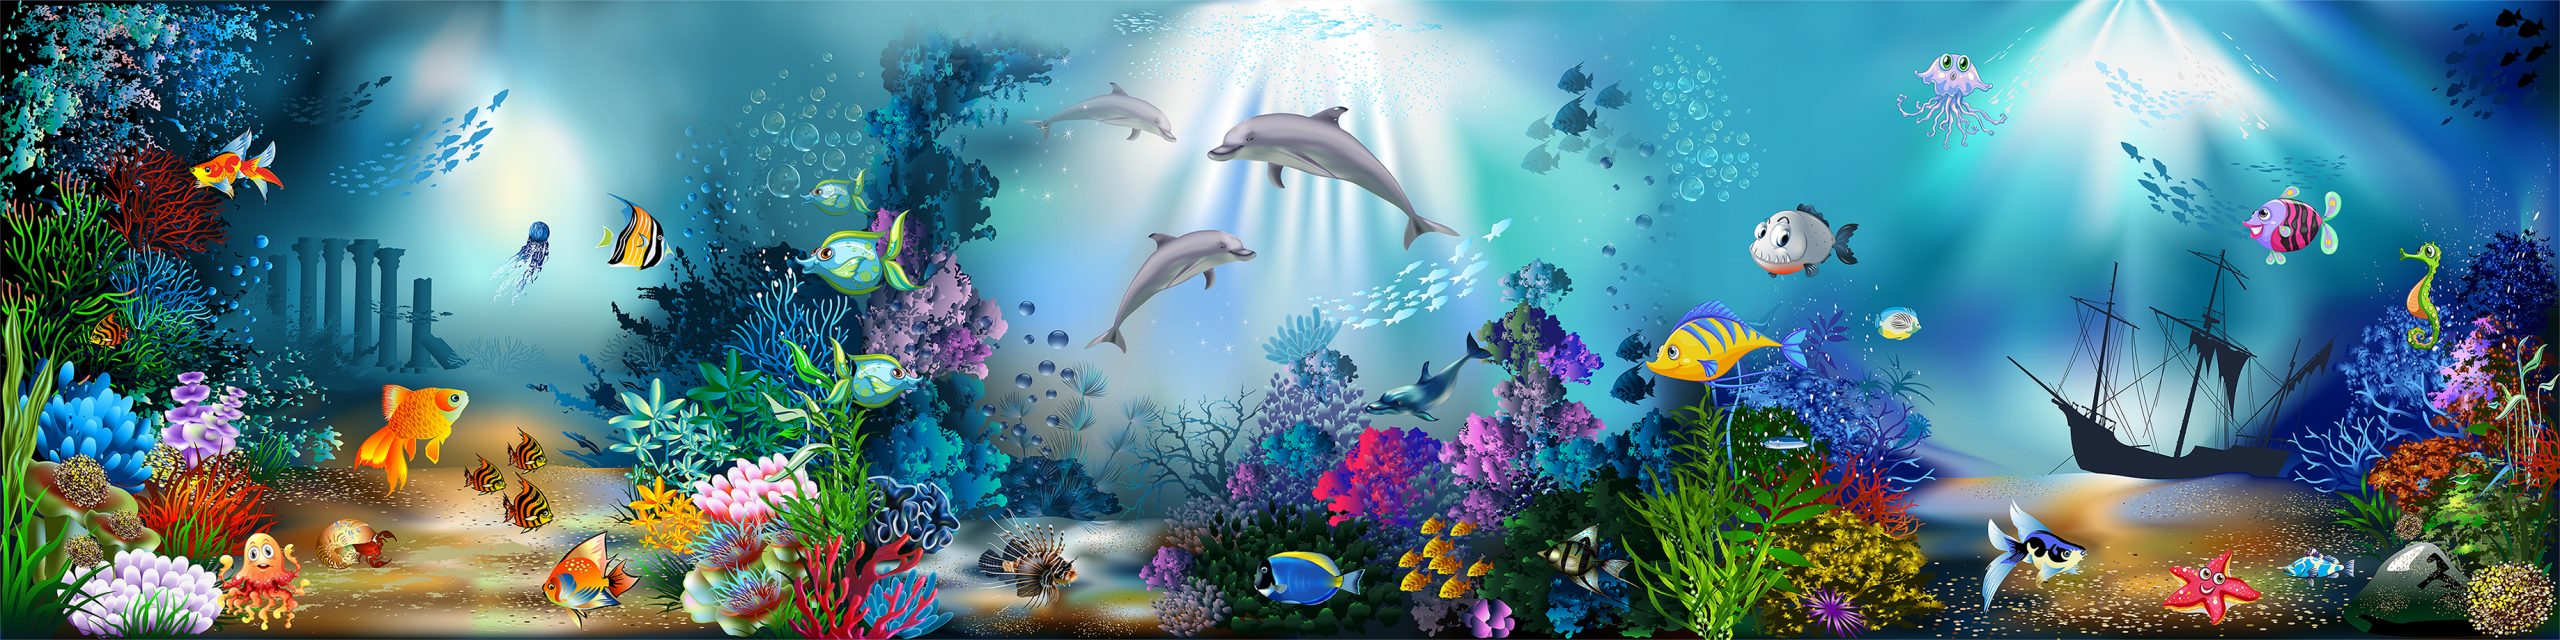 Дельфины и подводный мир